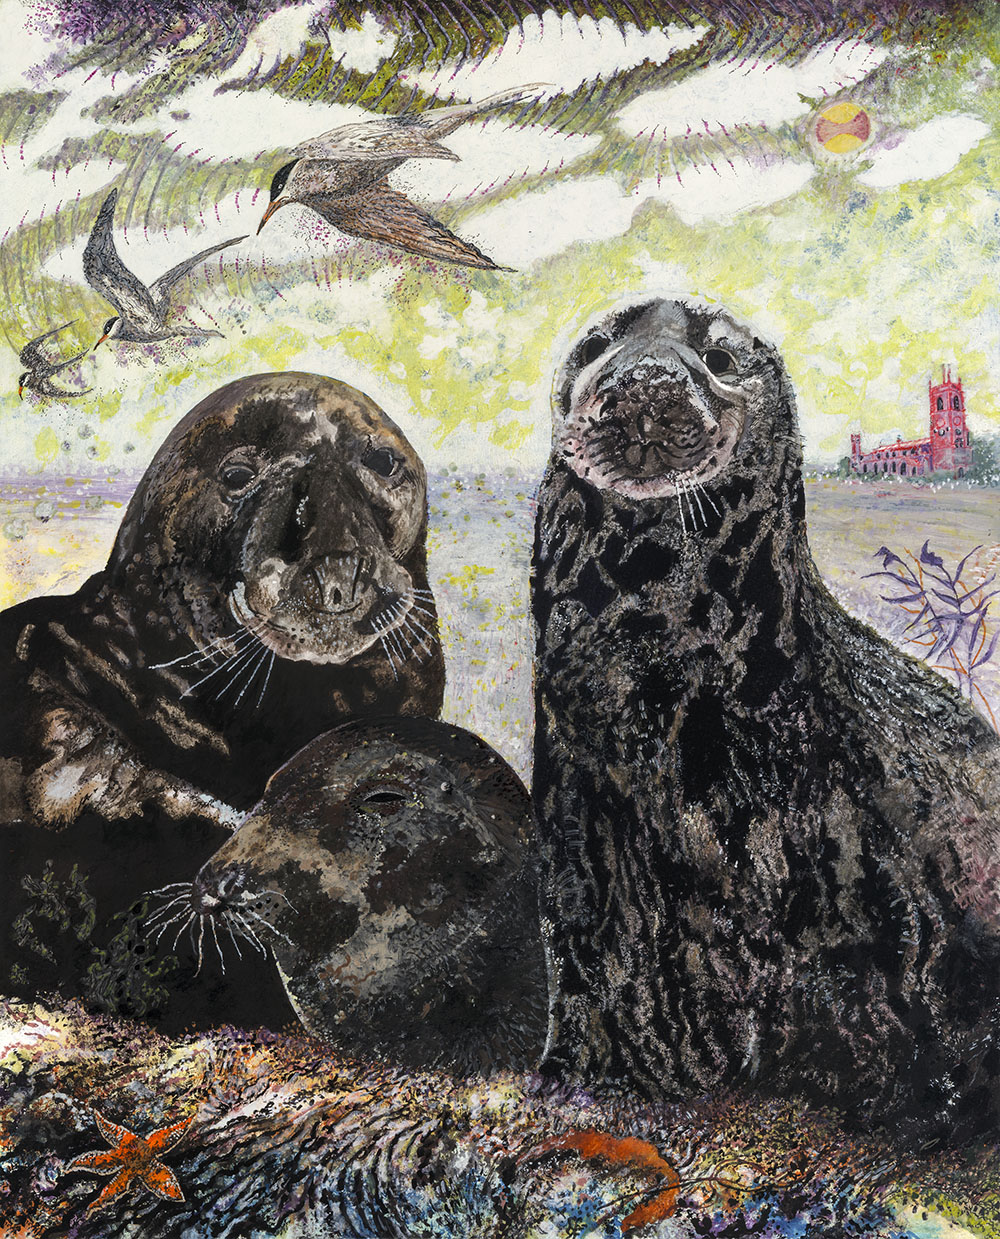 Blakeney Point Seals